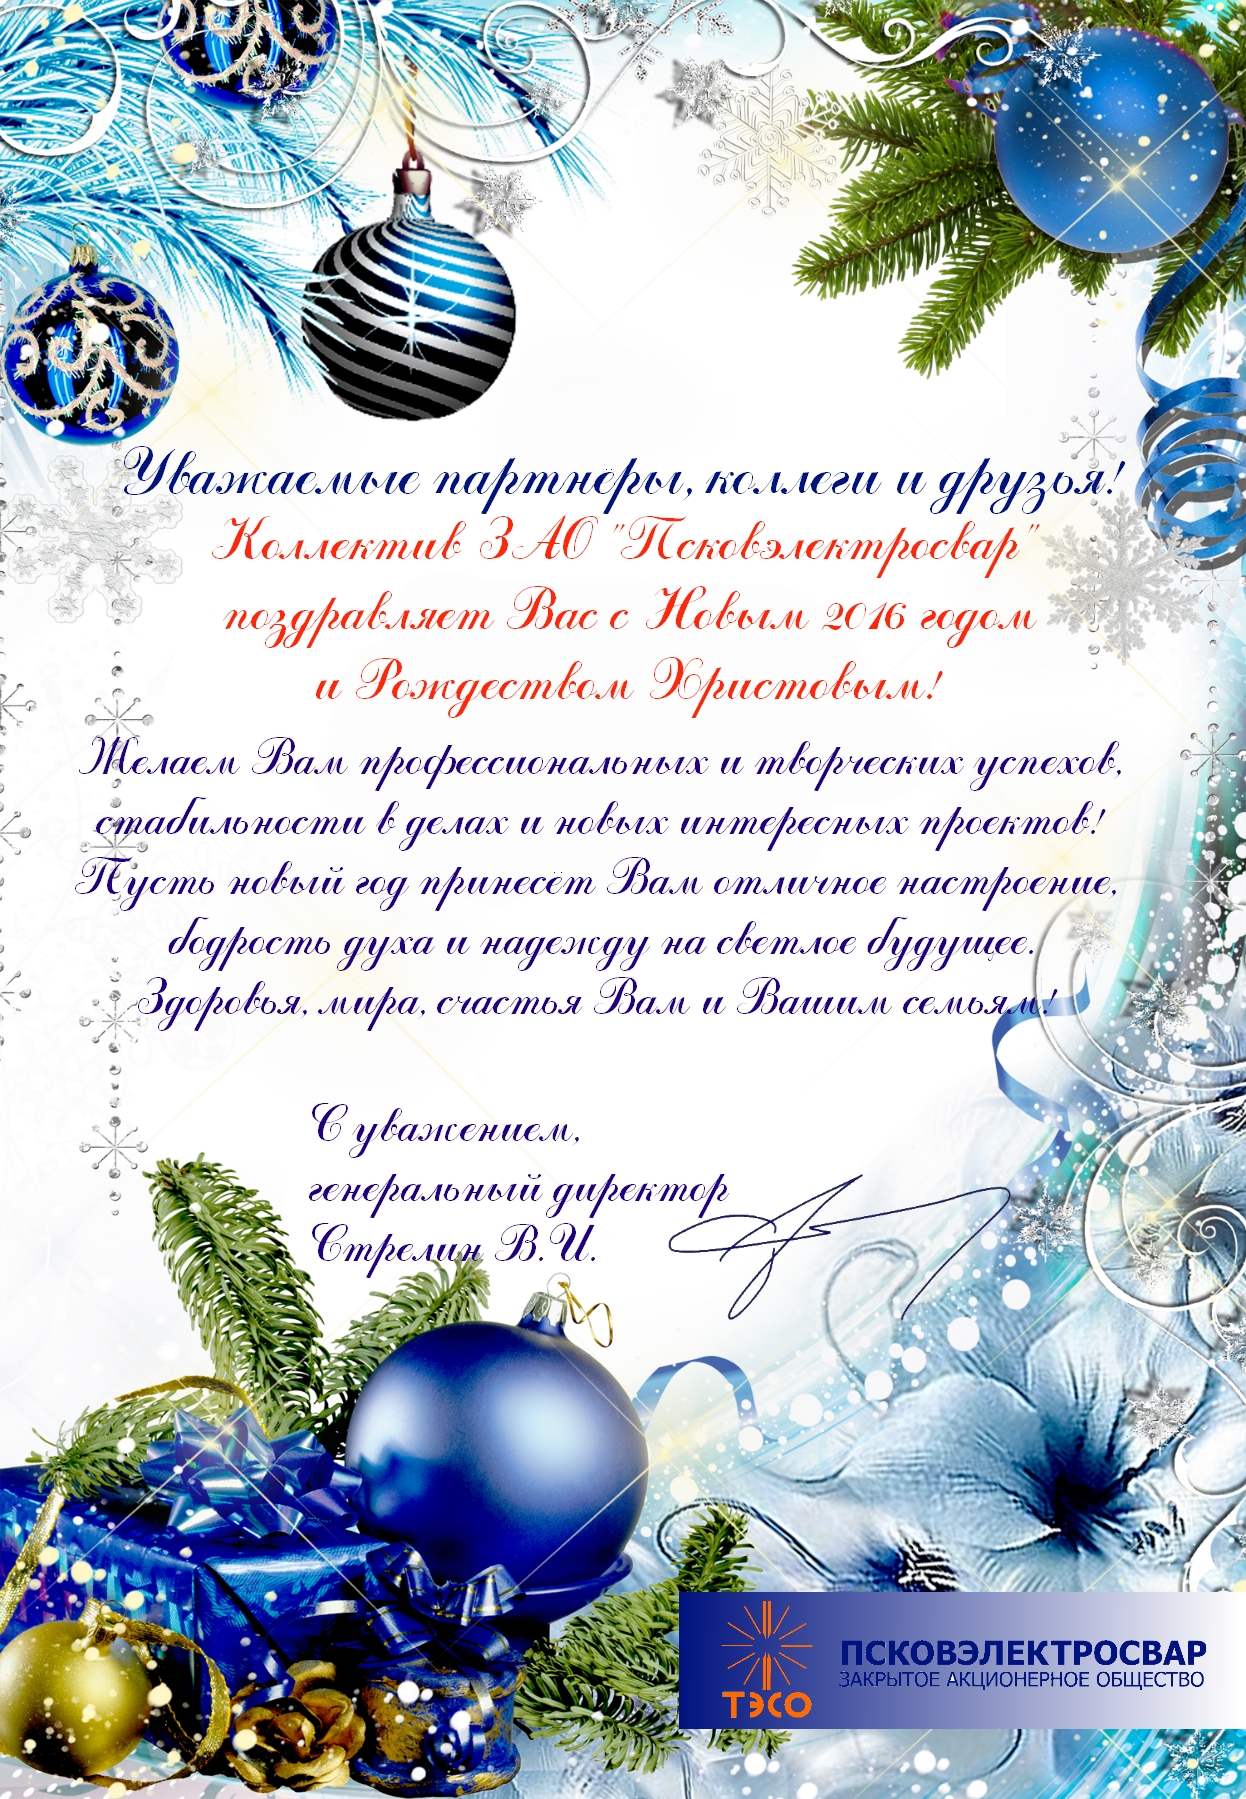 Псковэлектросвар поздравляет с Новым Годом и Рождеством!